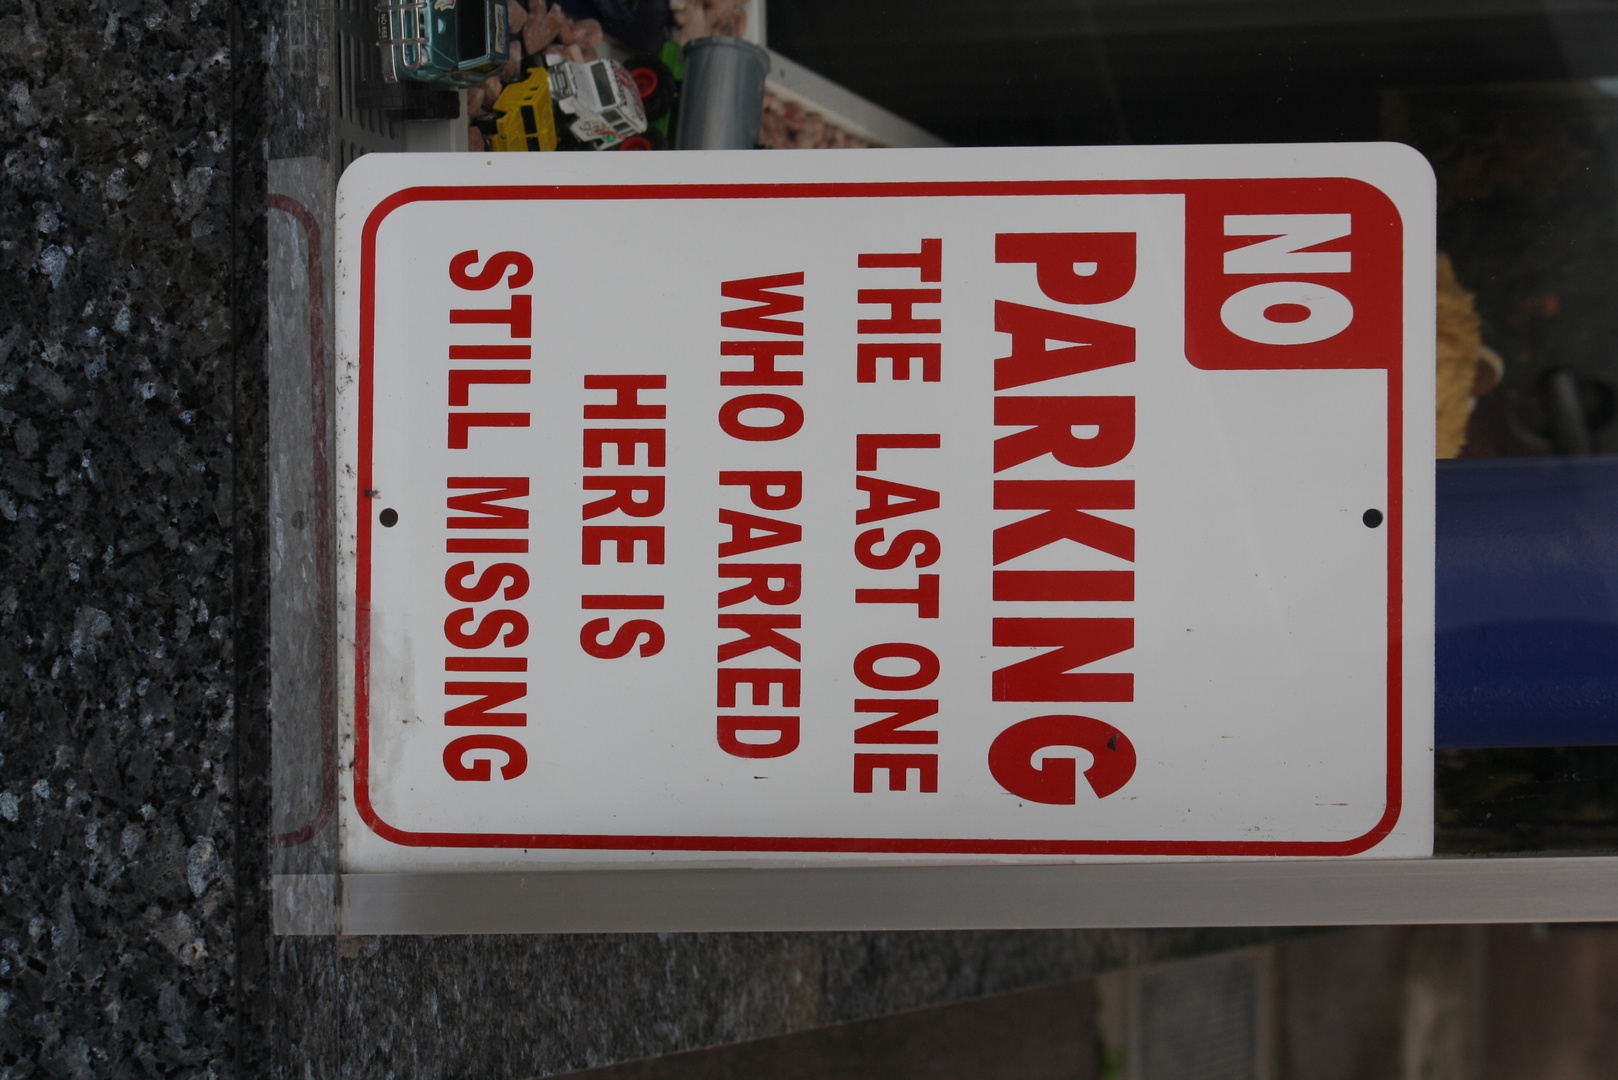 Das etwas andere Parkverbot